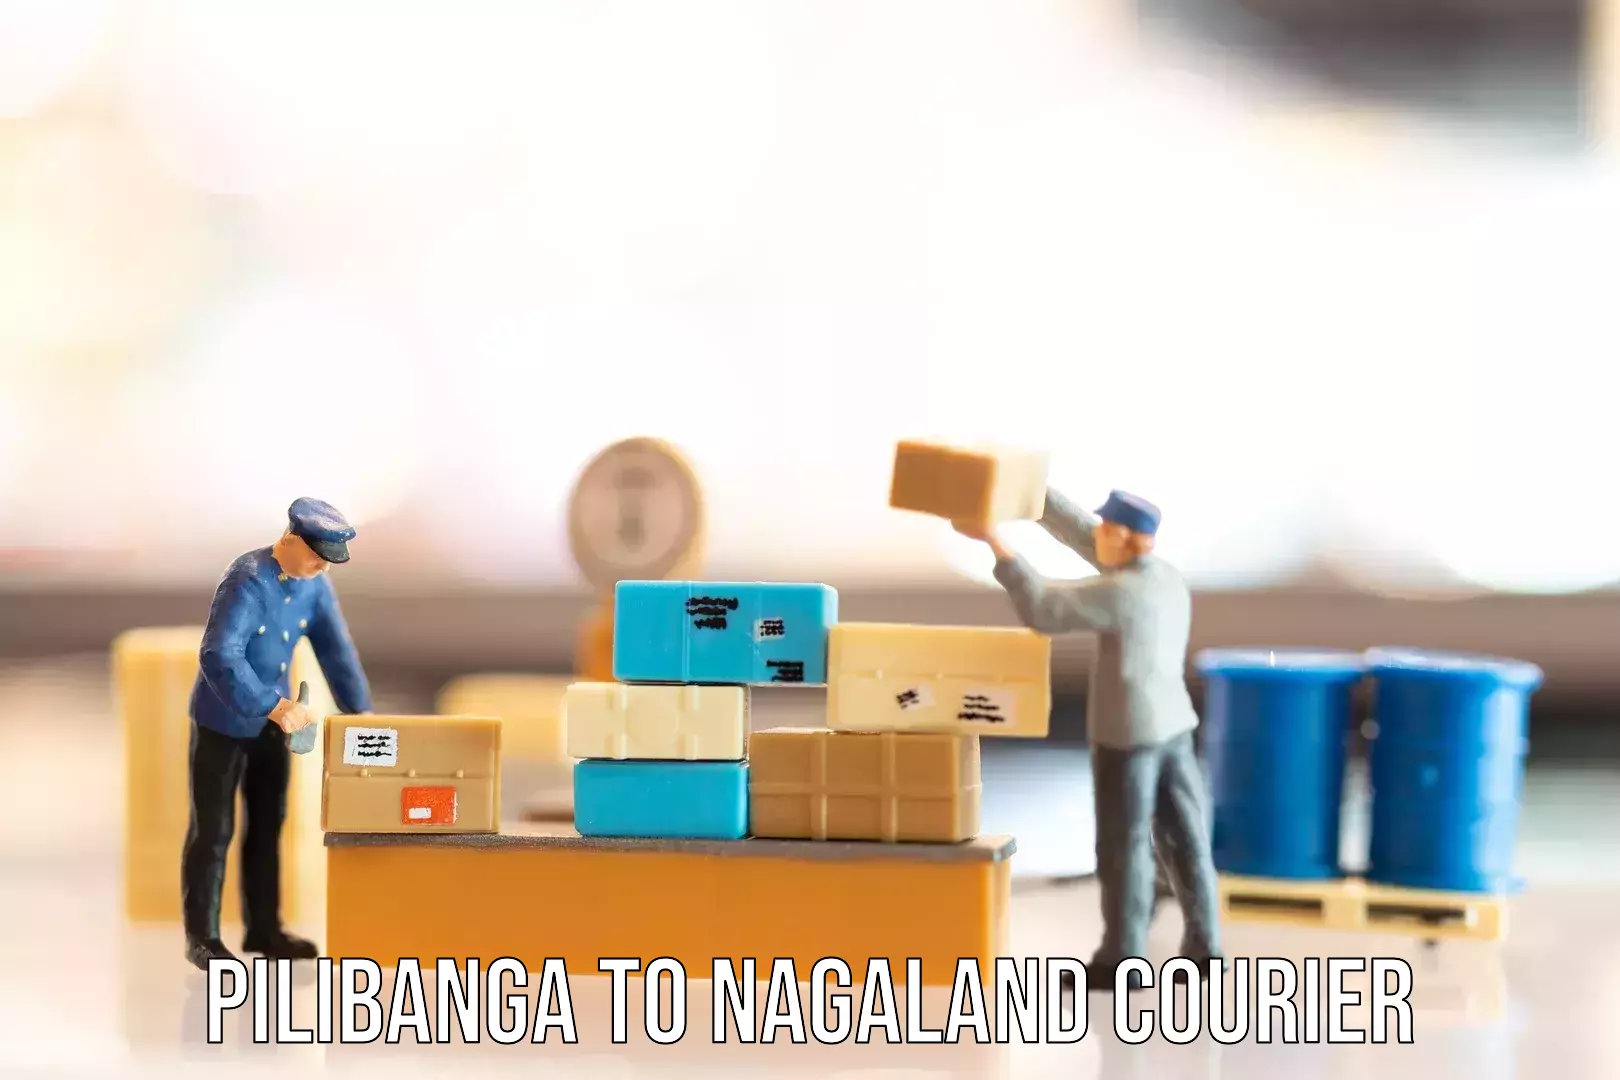 Luggage transport solutions Pilibanga to Nagaland